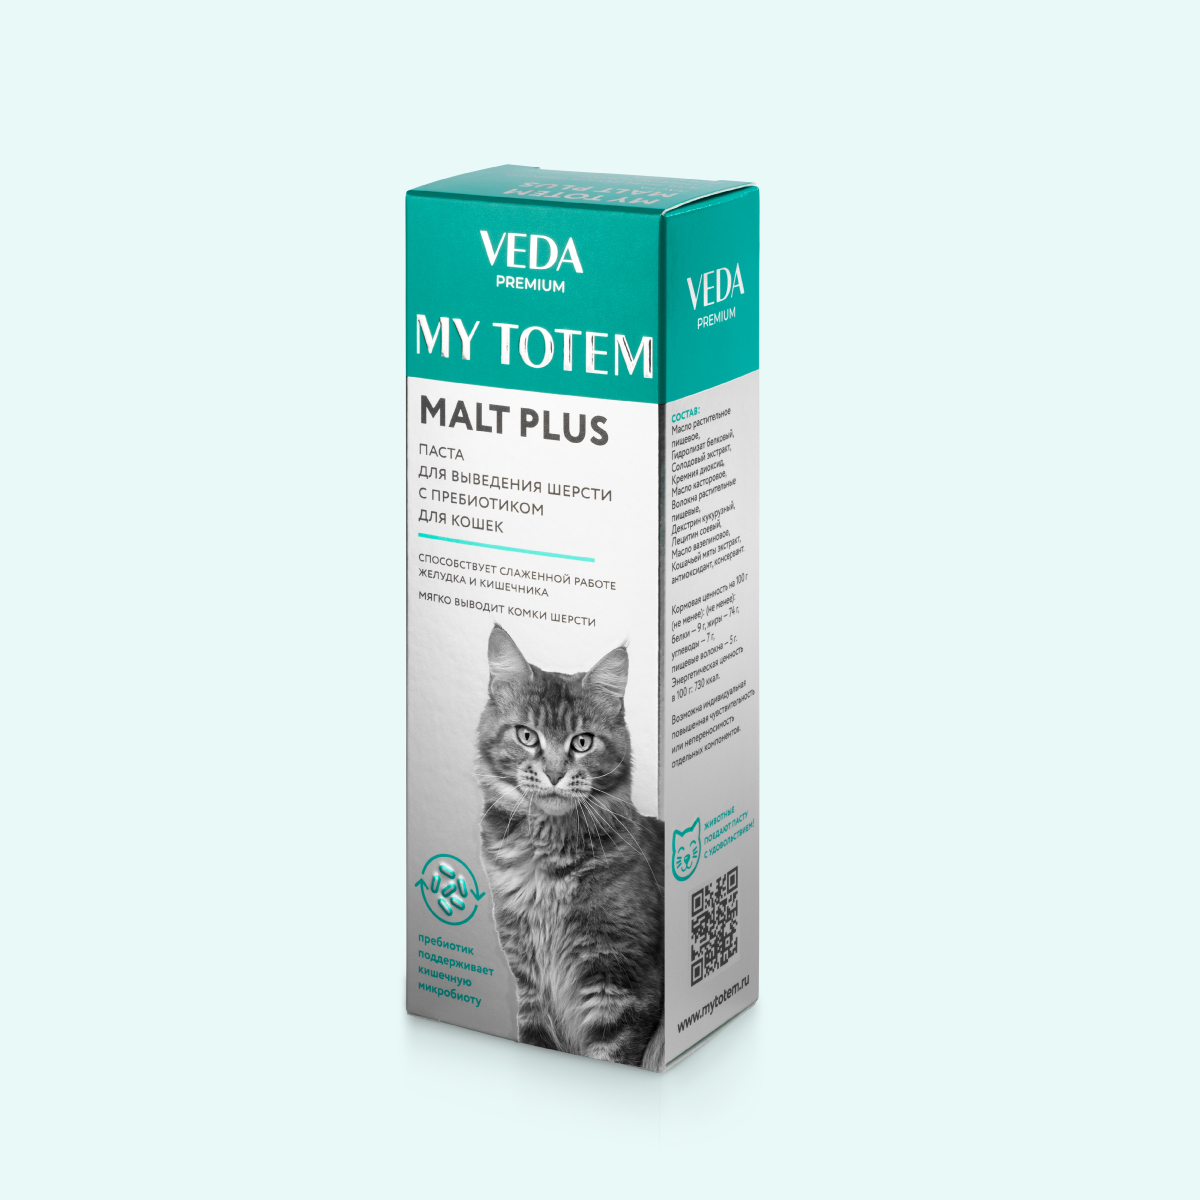 Паста для выведения шерсти с пребиотиком MALT PLUS для кошек